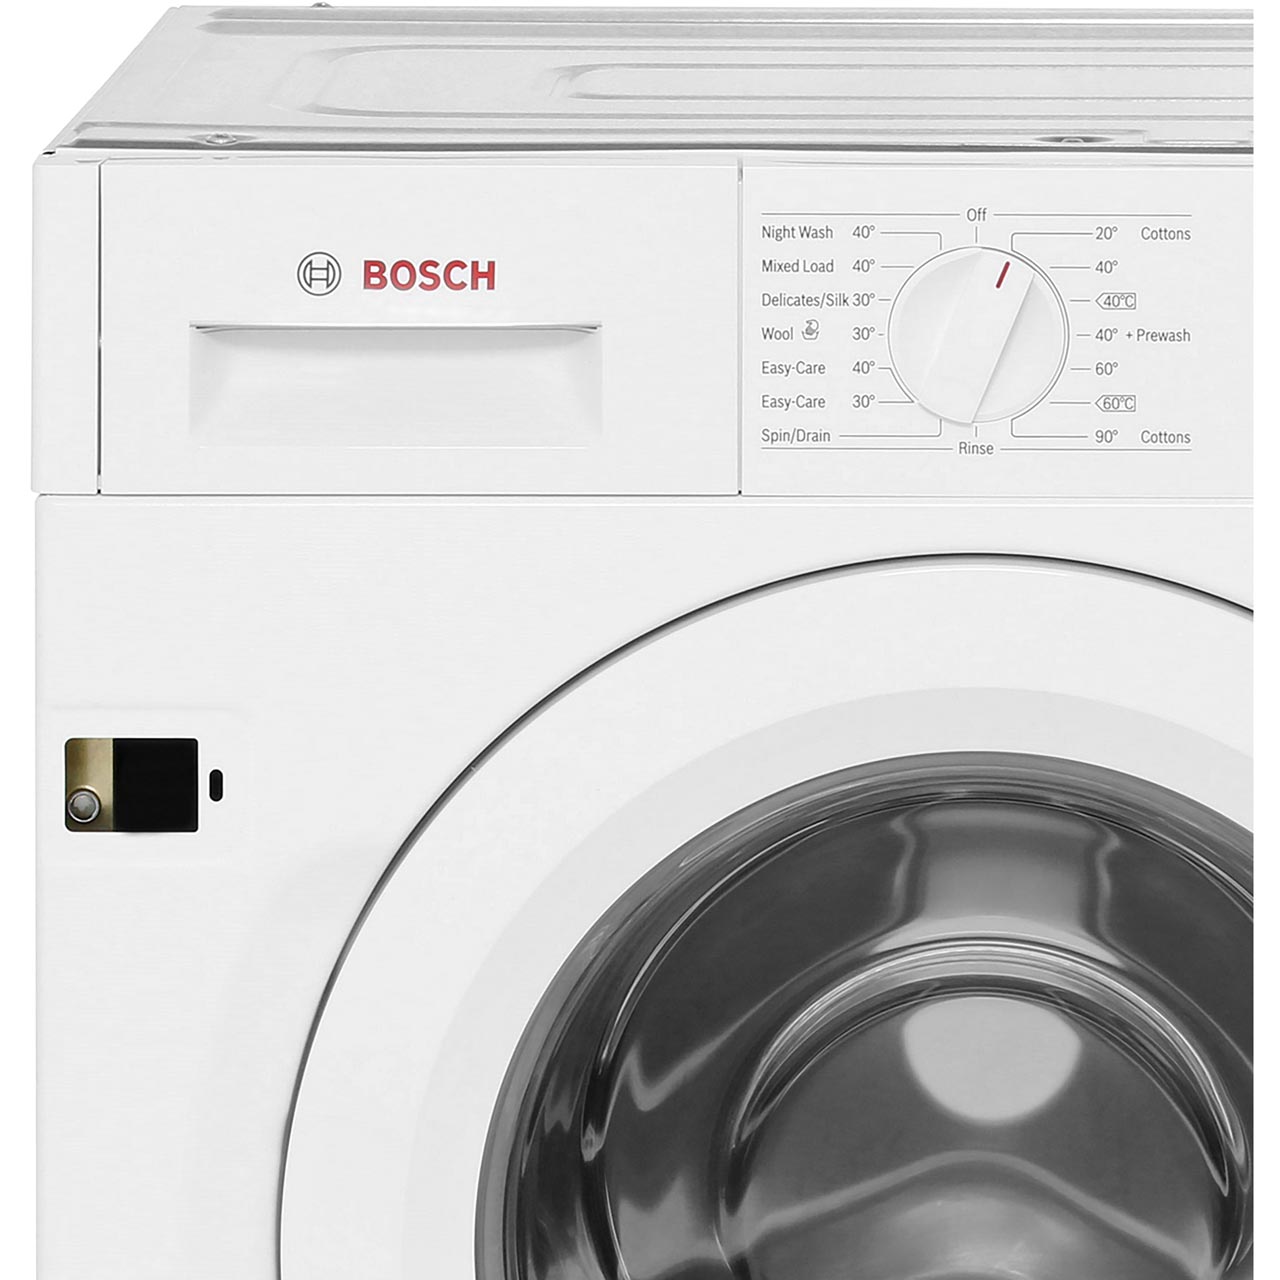 Wiw28300gb Wh Bosch Washing Machine Ao Com